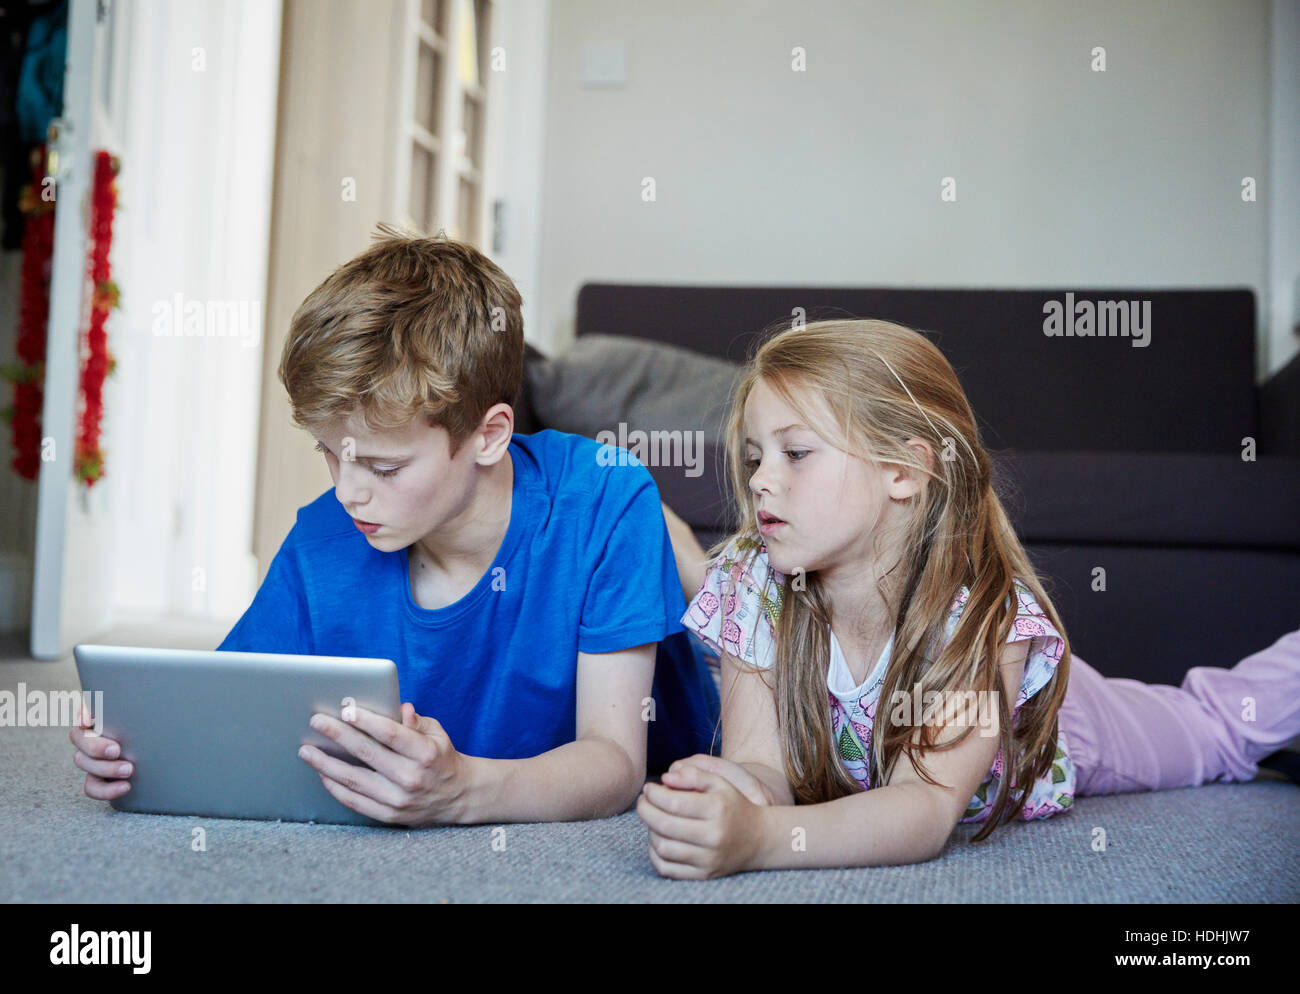 Deux enfants allongés sur le ventre le partage d'une tablette numérique à regarder l'écran. Banque D'Images